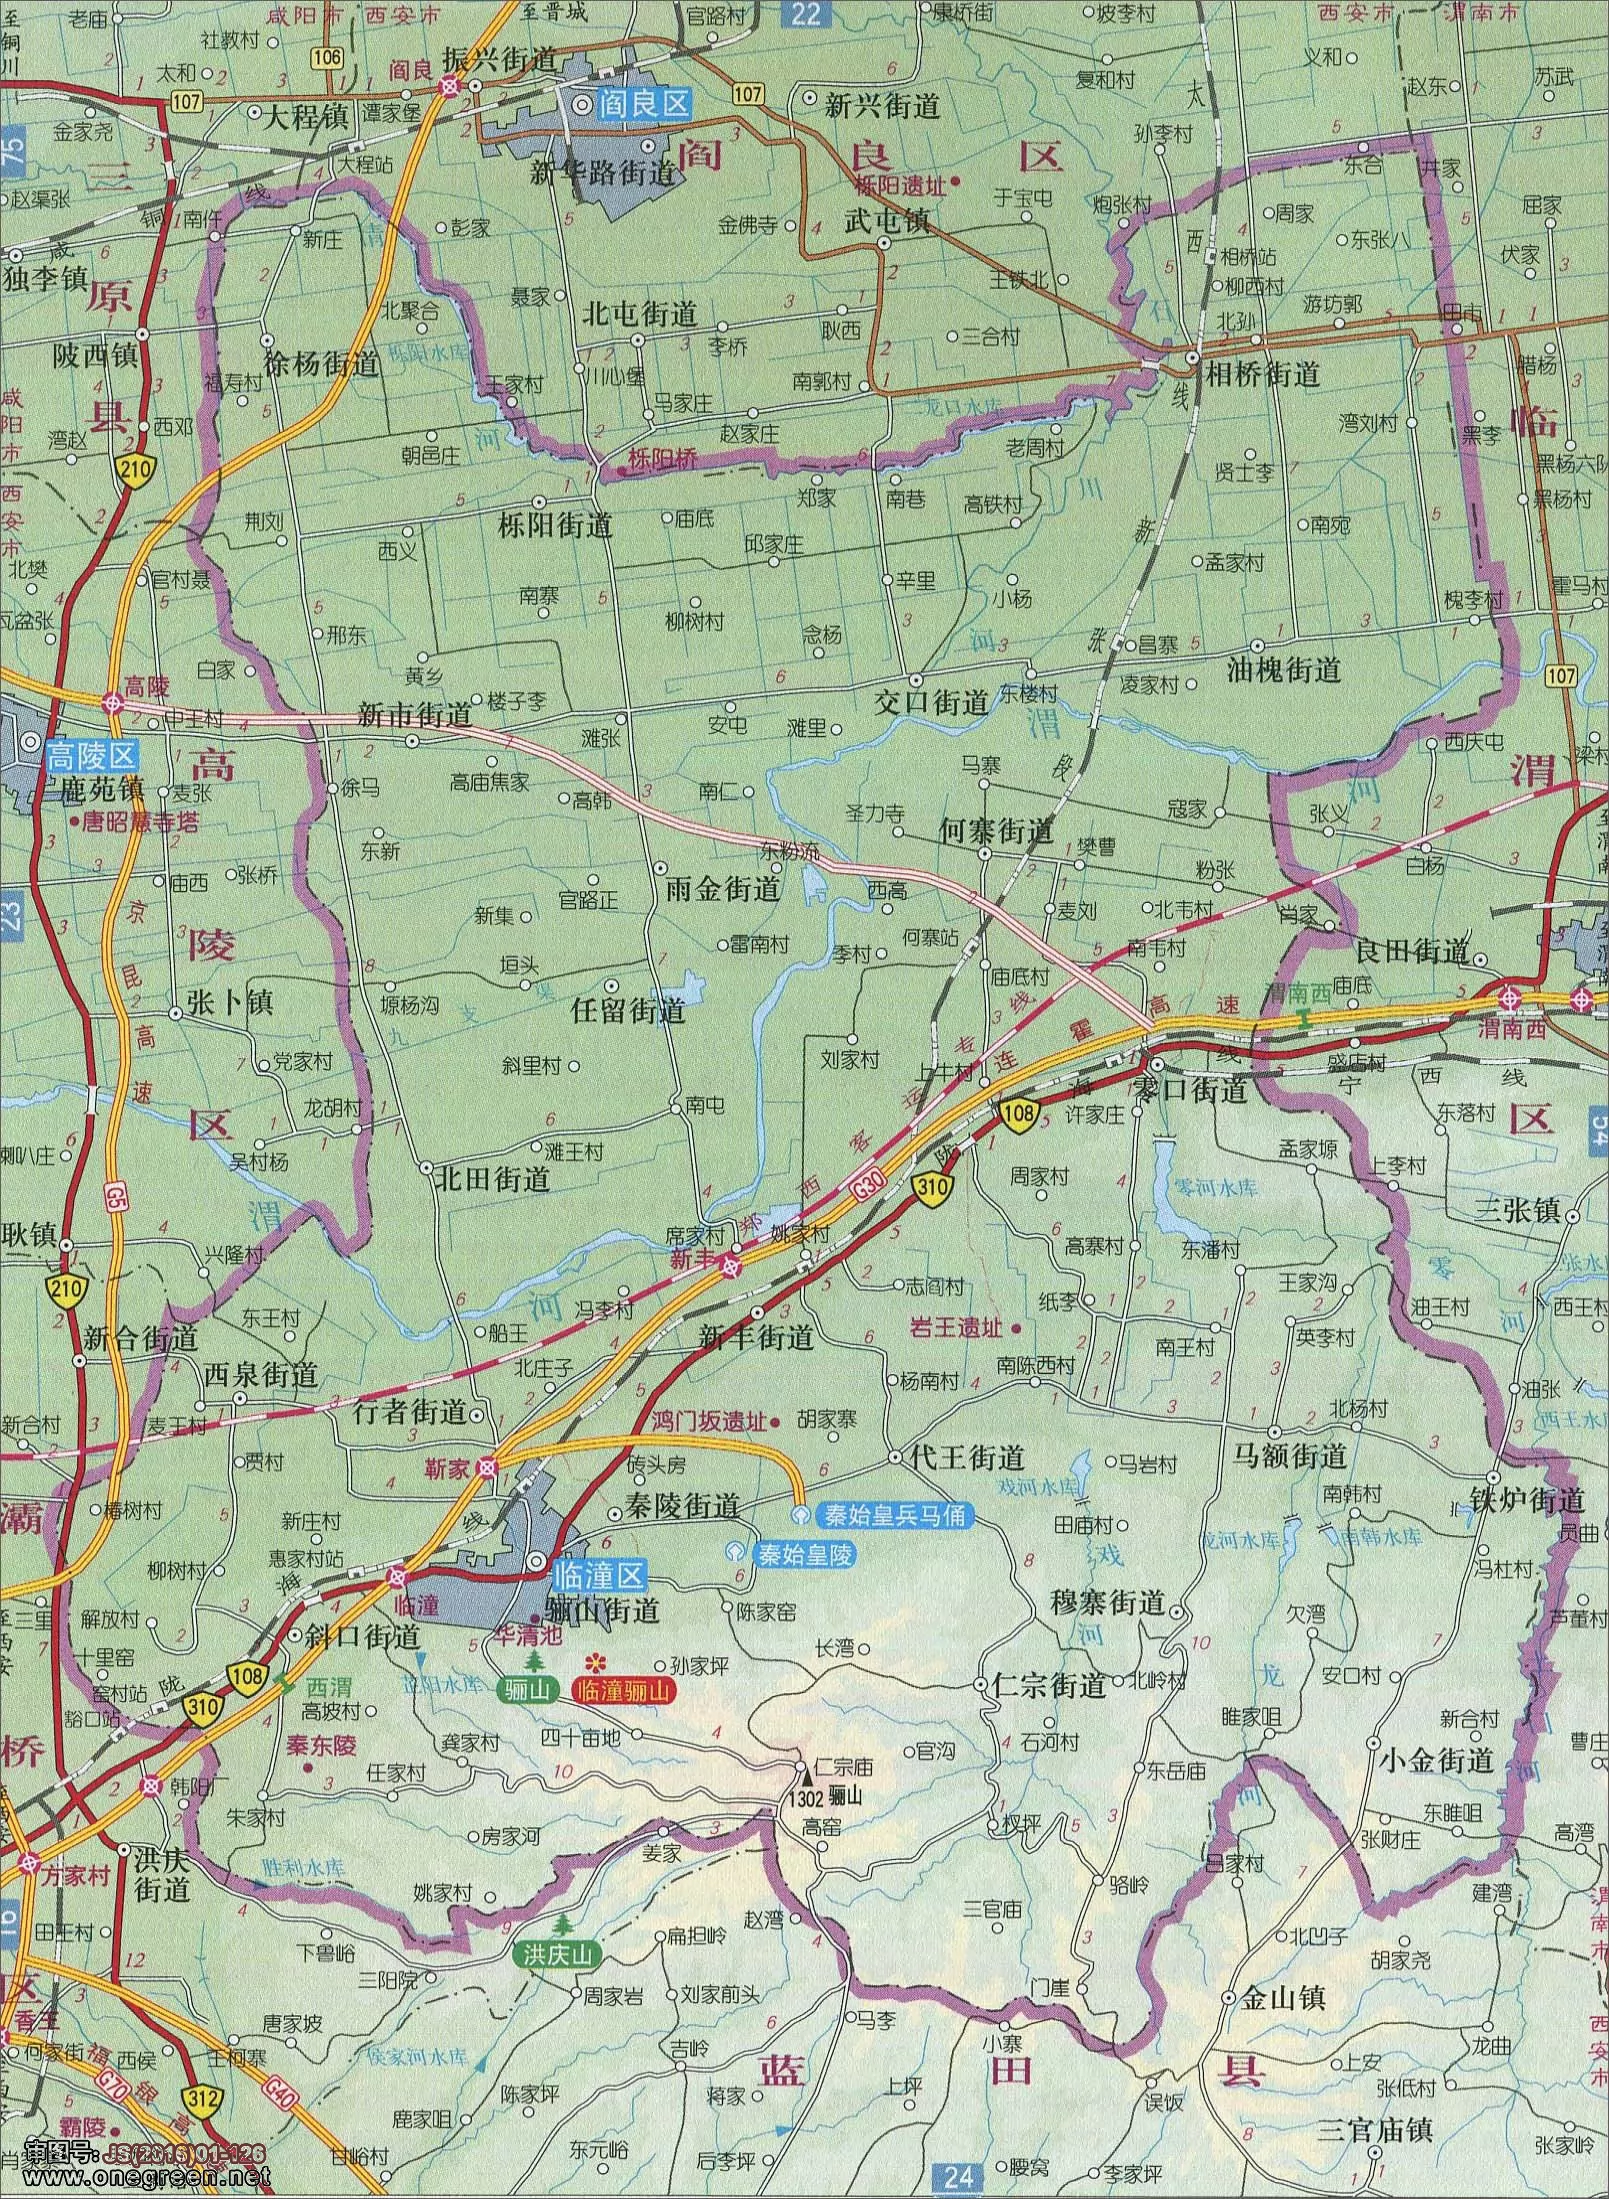 西安九个区域划分地图,西安市区域划分图,西安城区划分图_大山谷图库